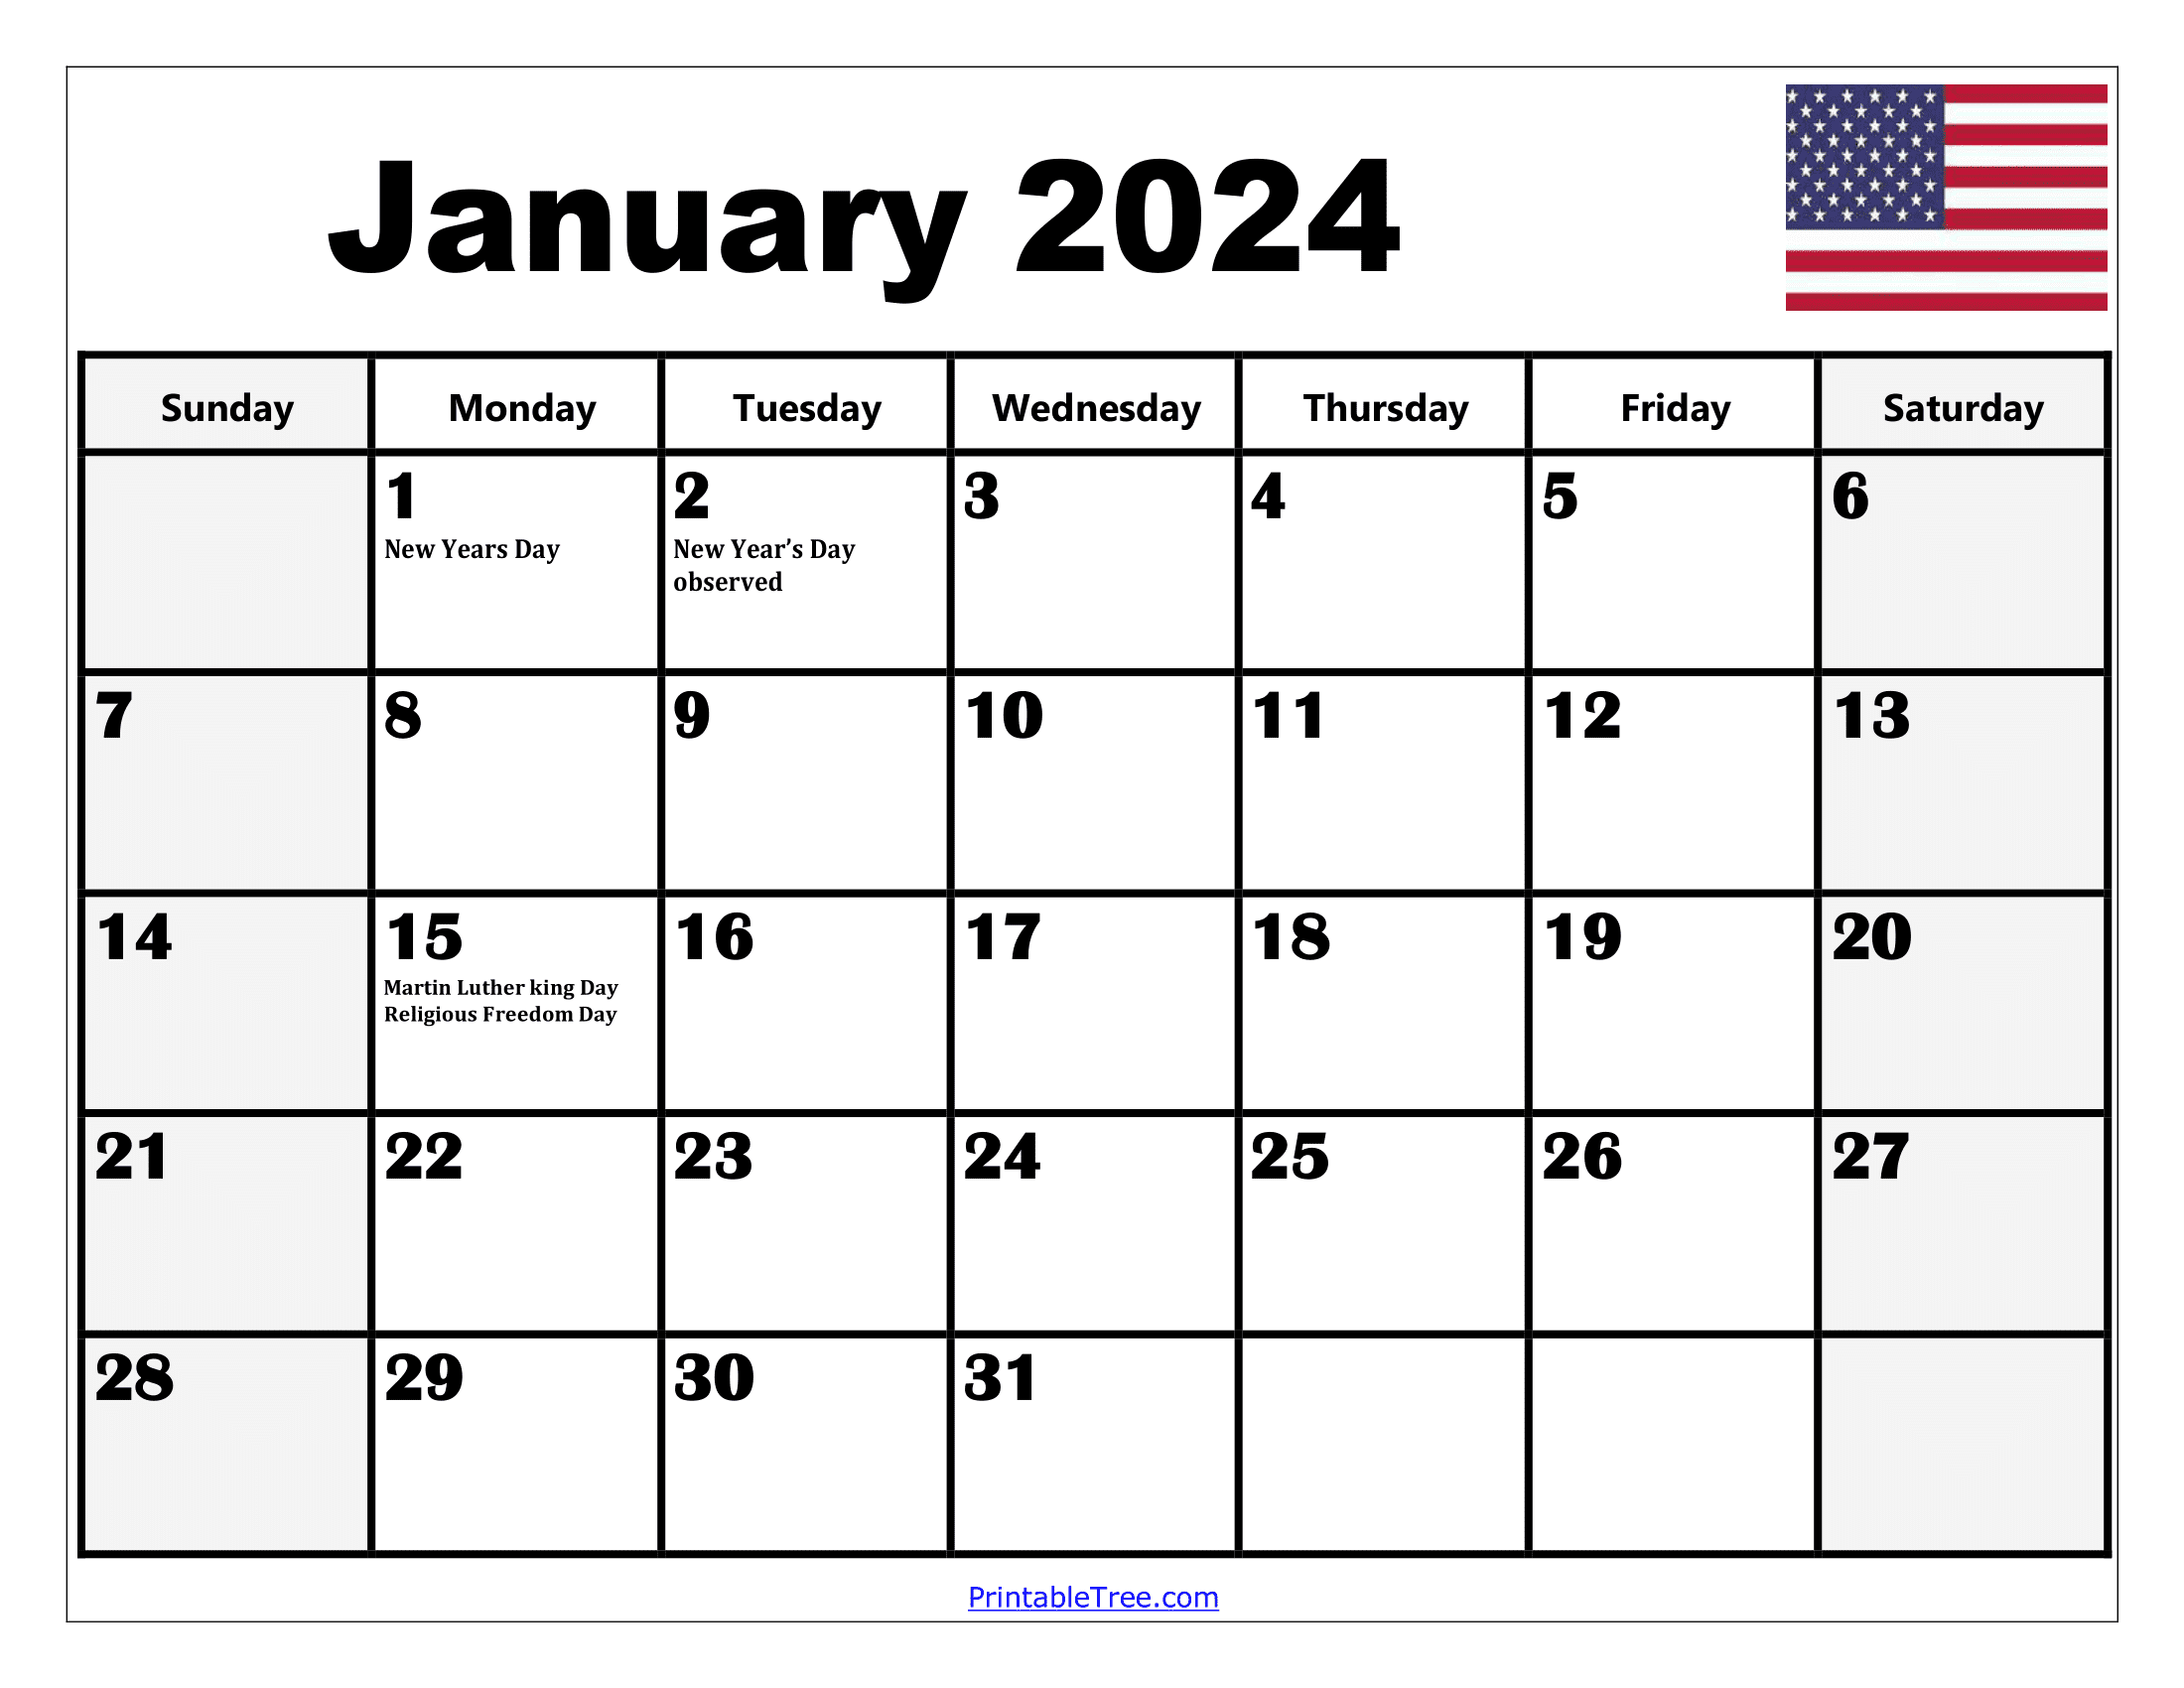 2024 Holiday Calendar Days Free Download Nov 2024 Calendar - Free Printable 2024 Calendar With Religious Holidays